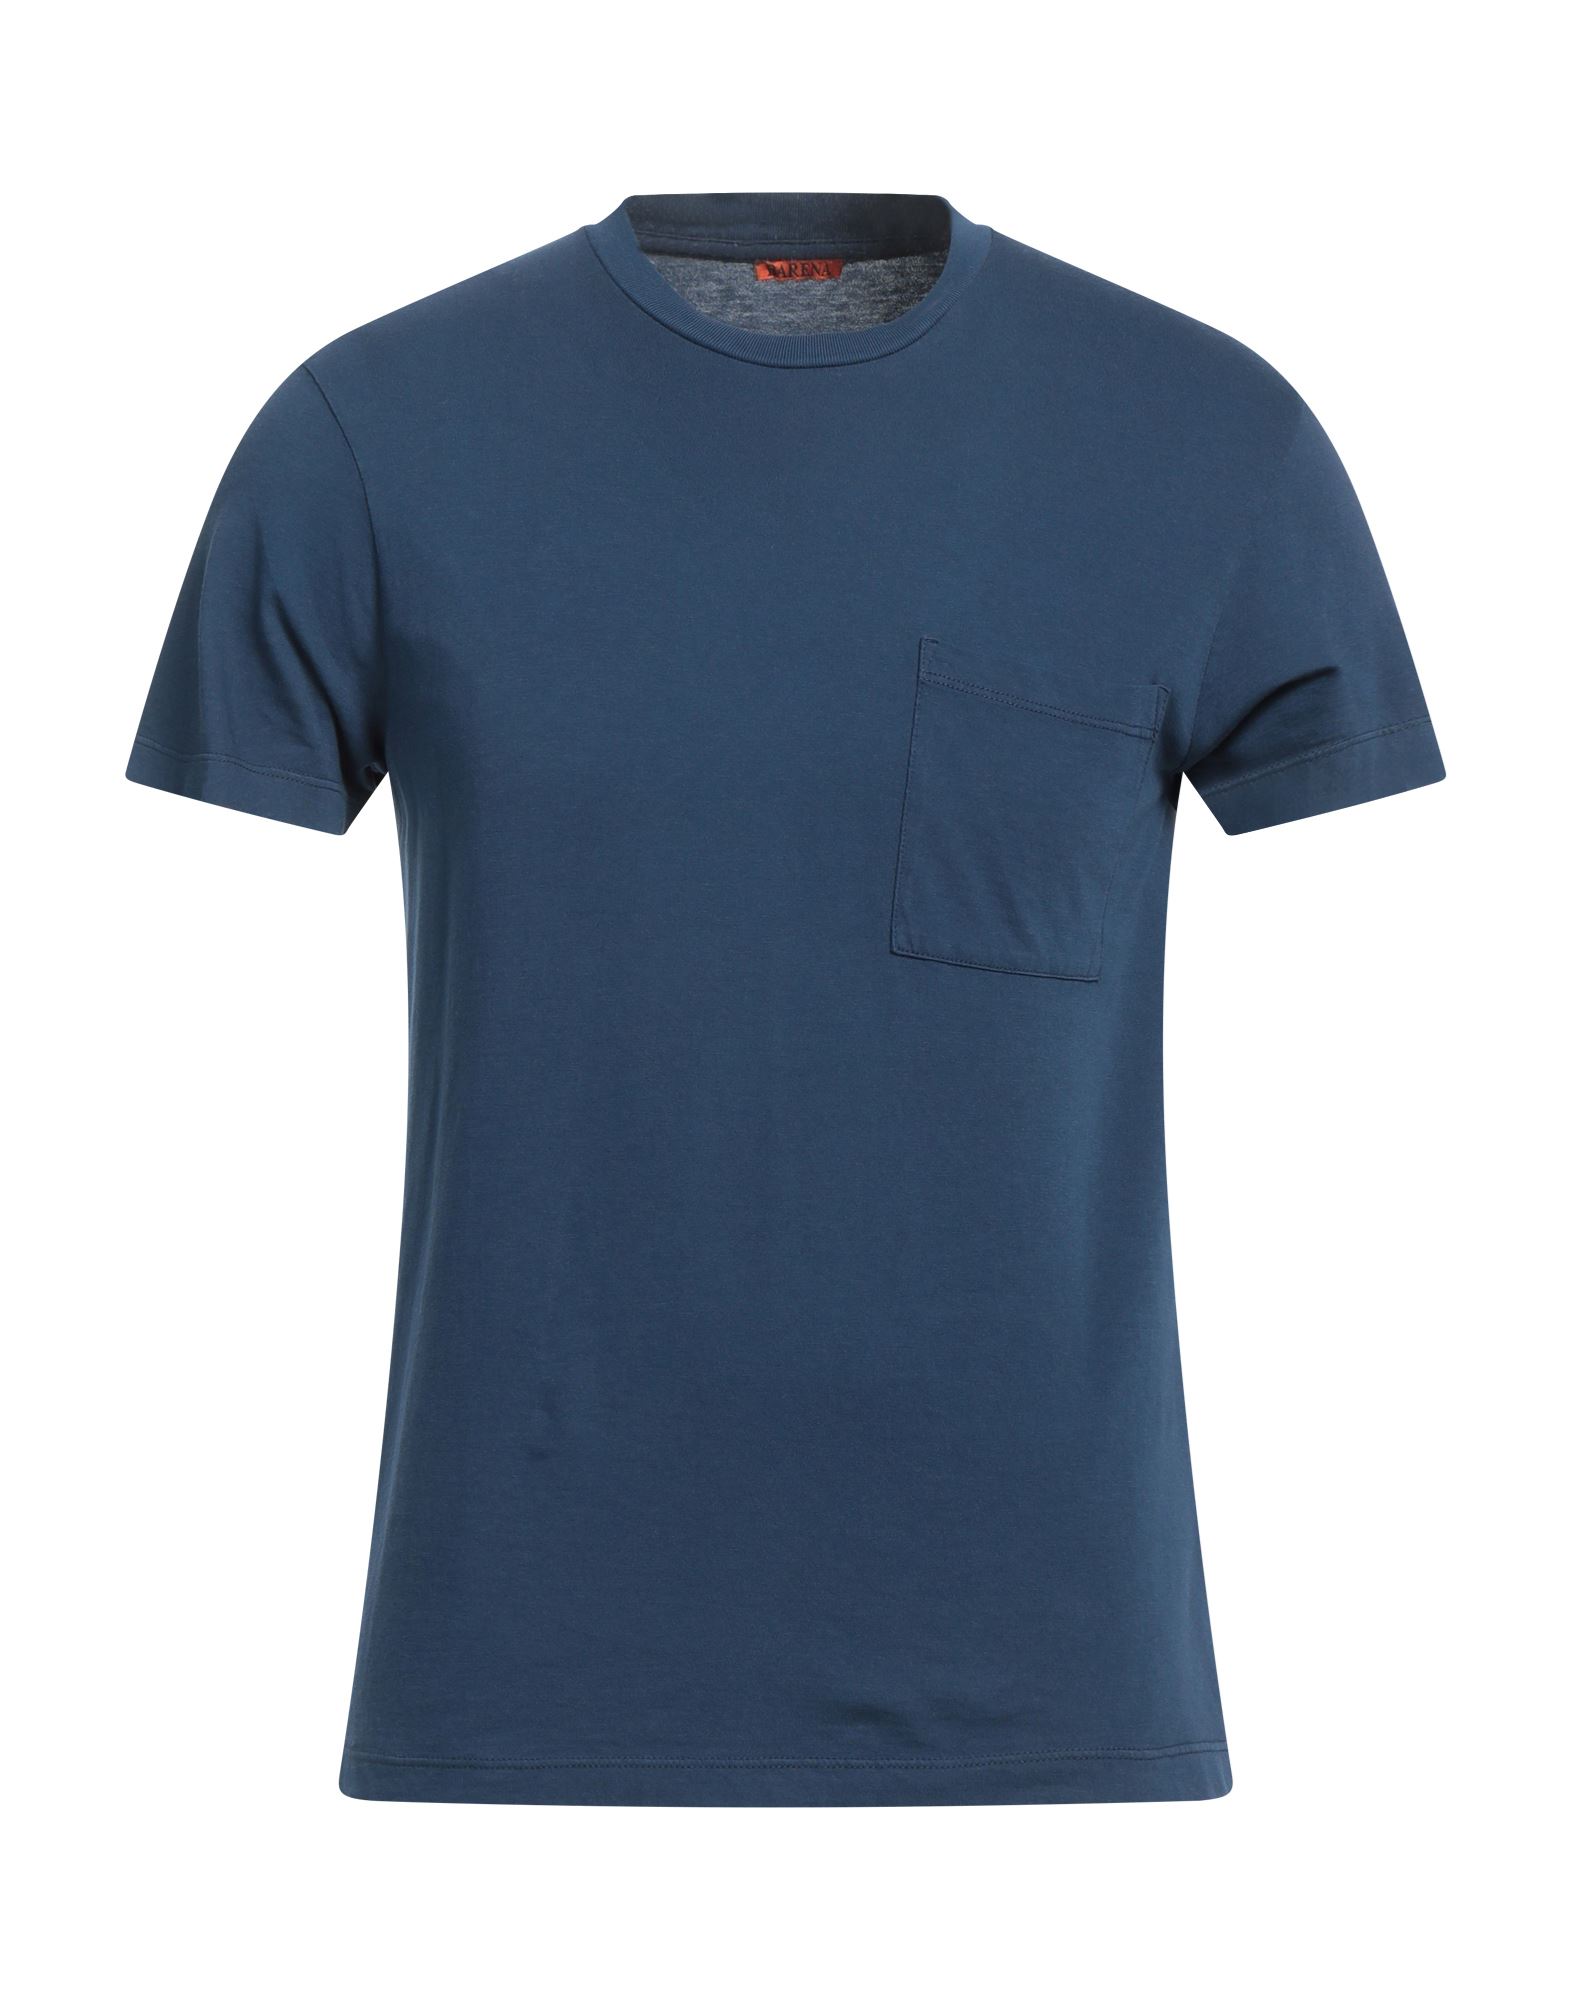 Barena Venezia Barena T-shirts In Navy Blue